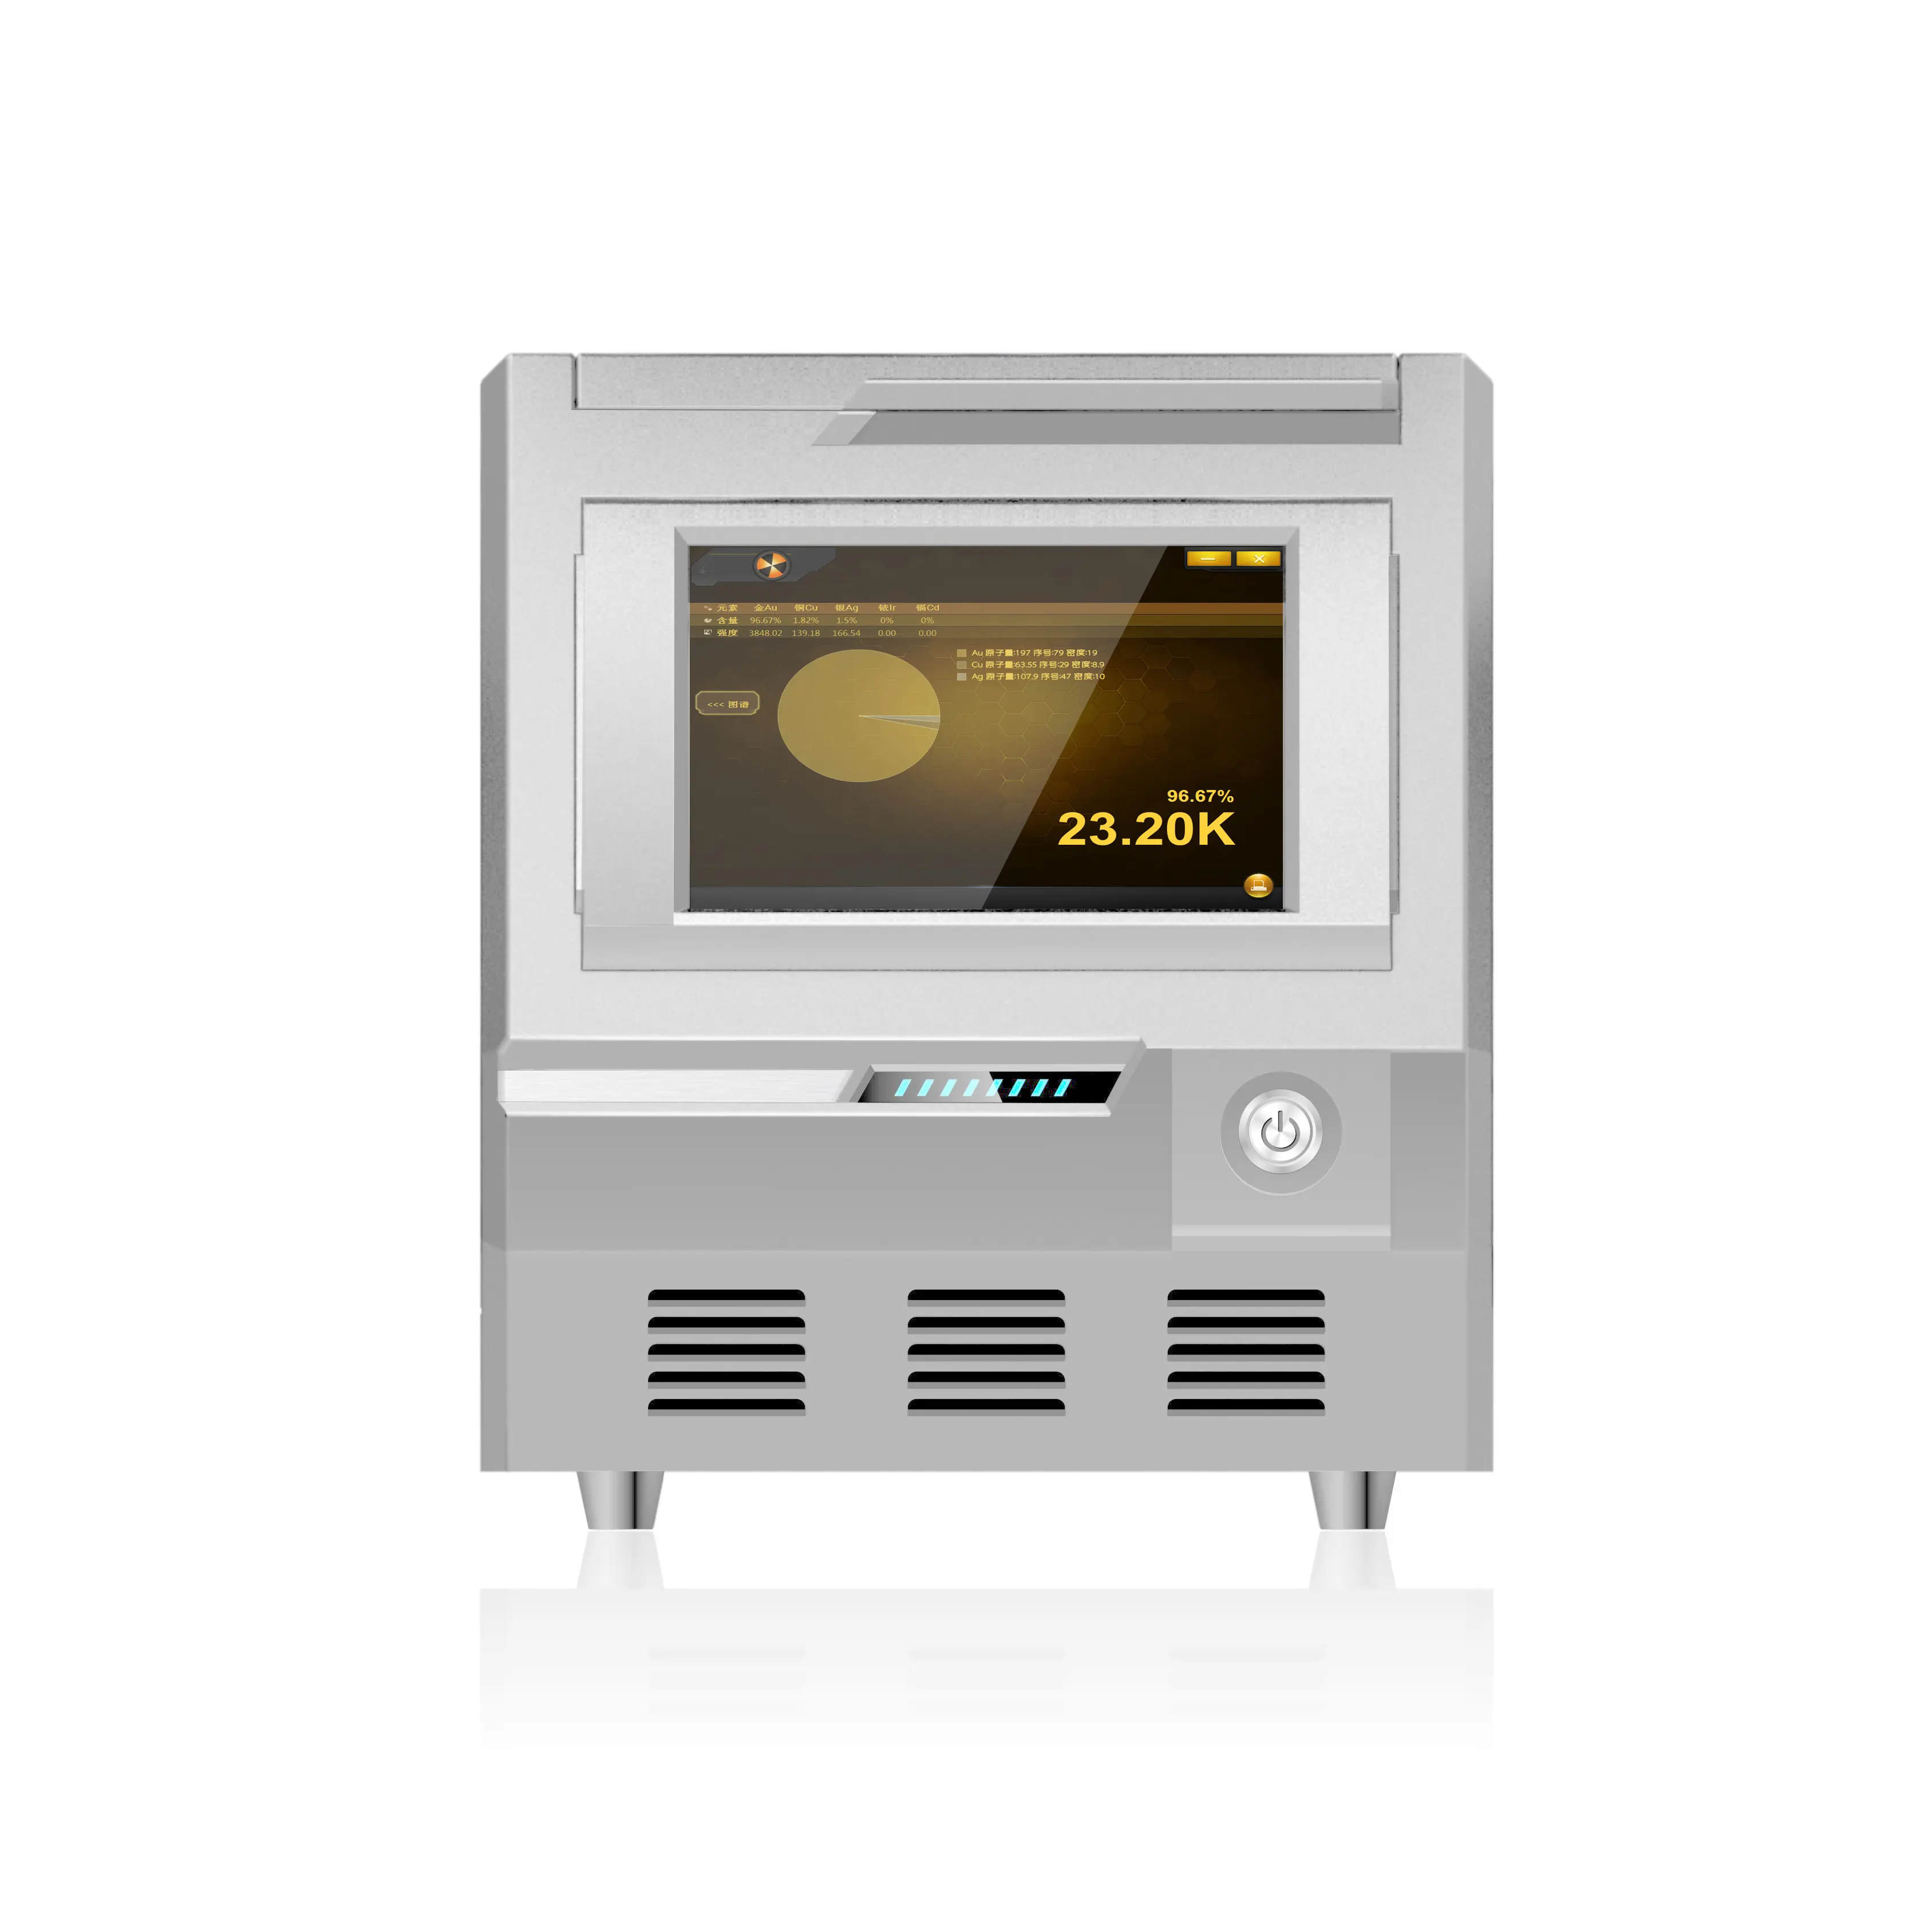 EXF9630 prezzo all'ingrosso Xrf analizzatore prezzo macchina di prova di purezza dell'oro di alta qualità macchina Tester d'oro per oro argento